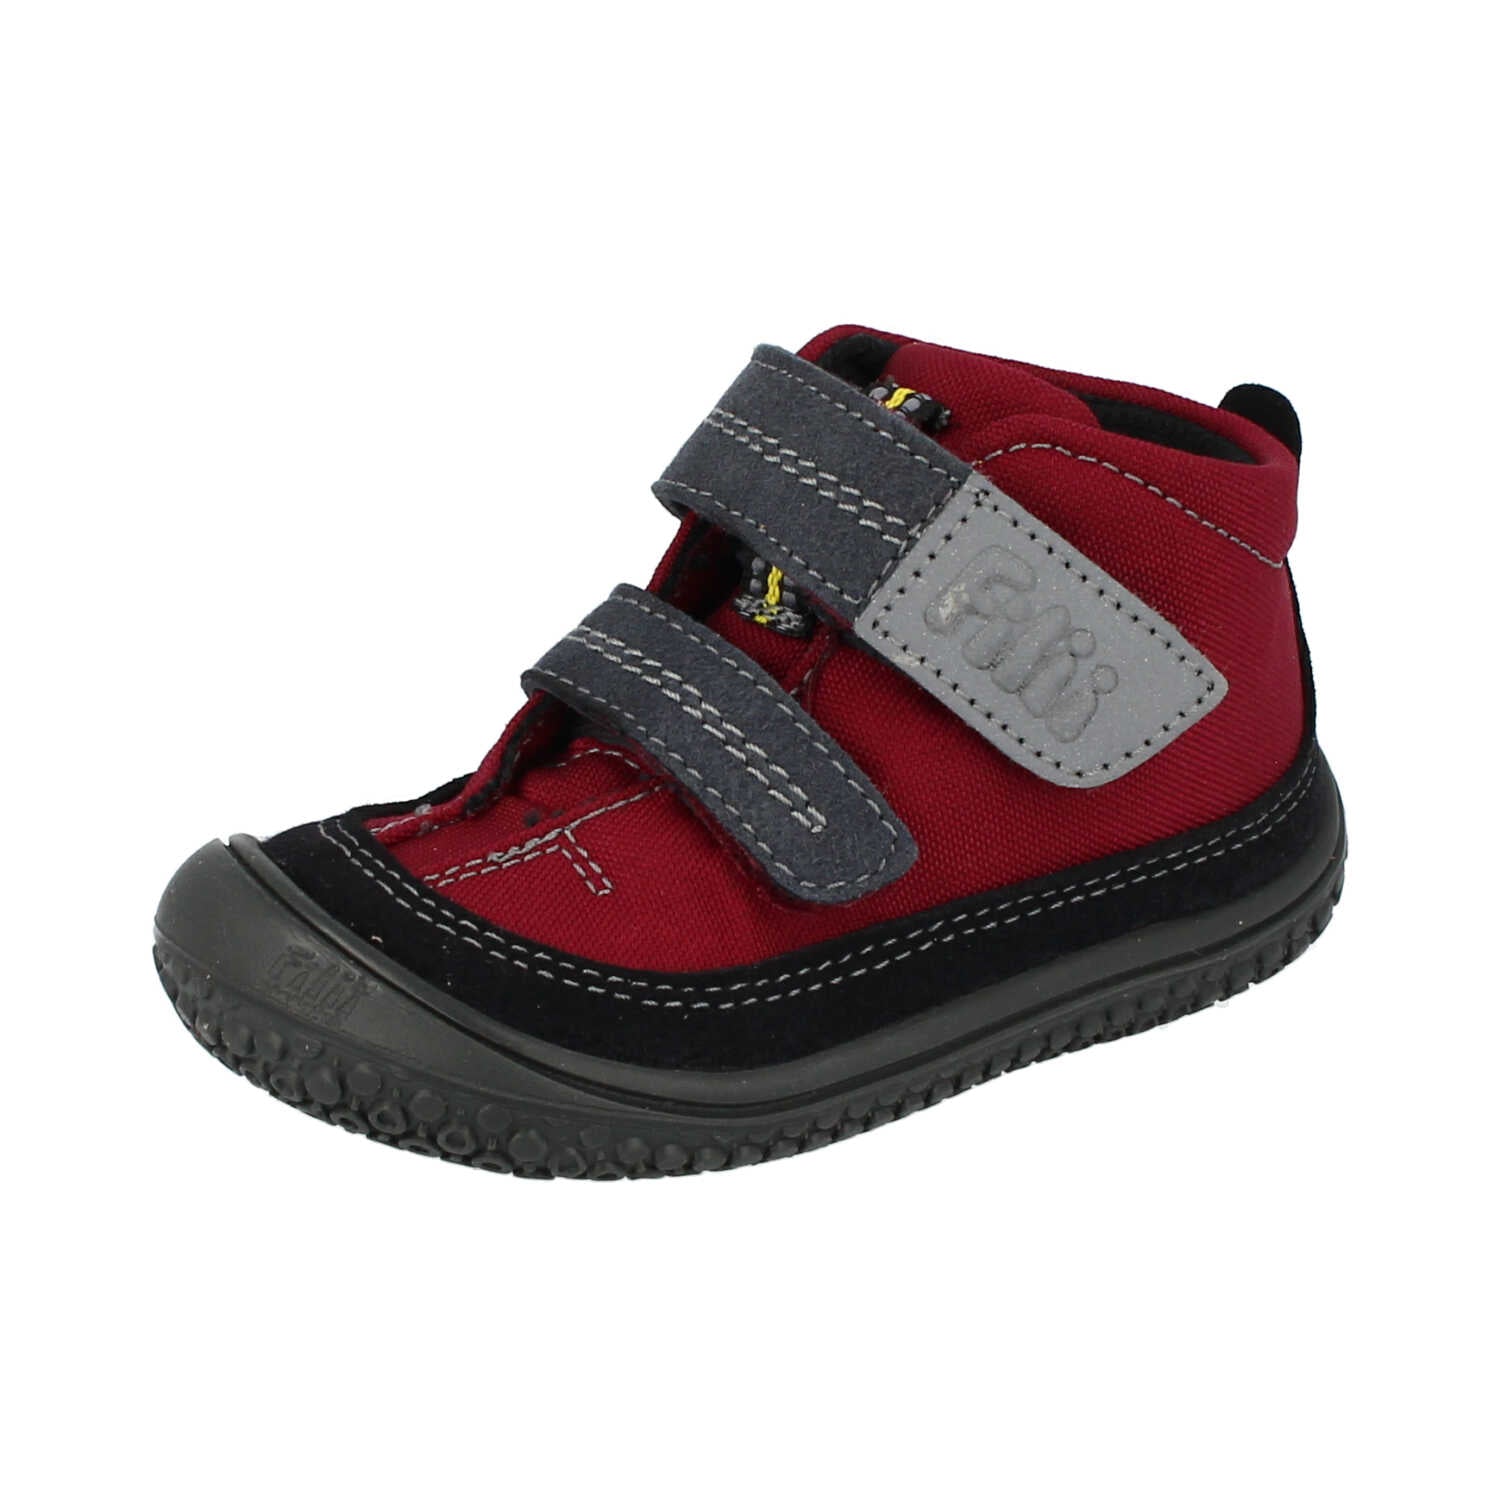 Filii Viper Velcro "Medium" barfods high sneakers til børn i farven berry, vinklet